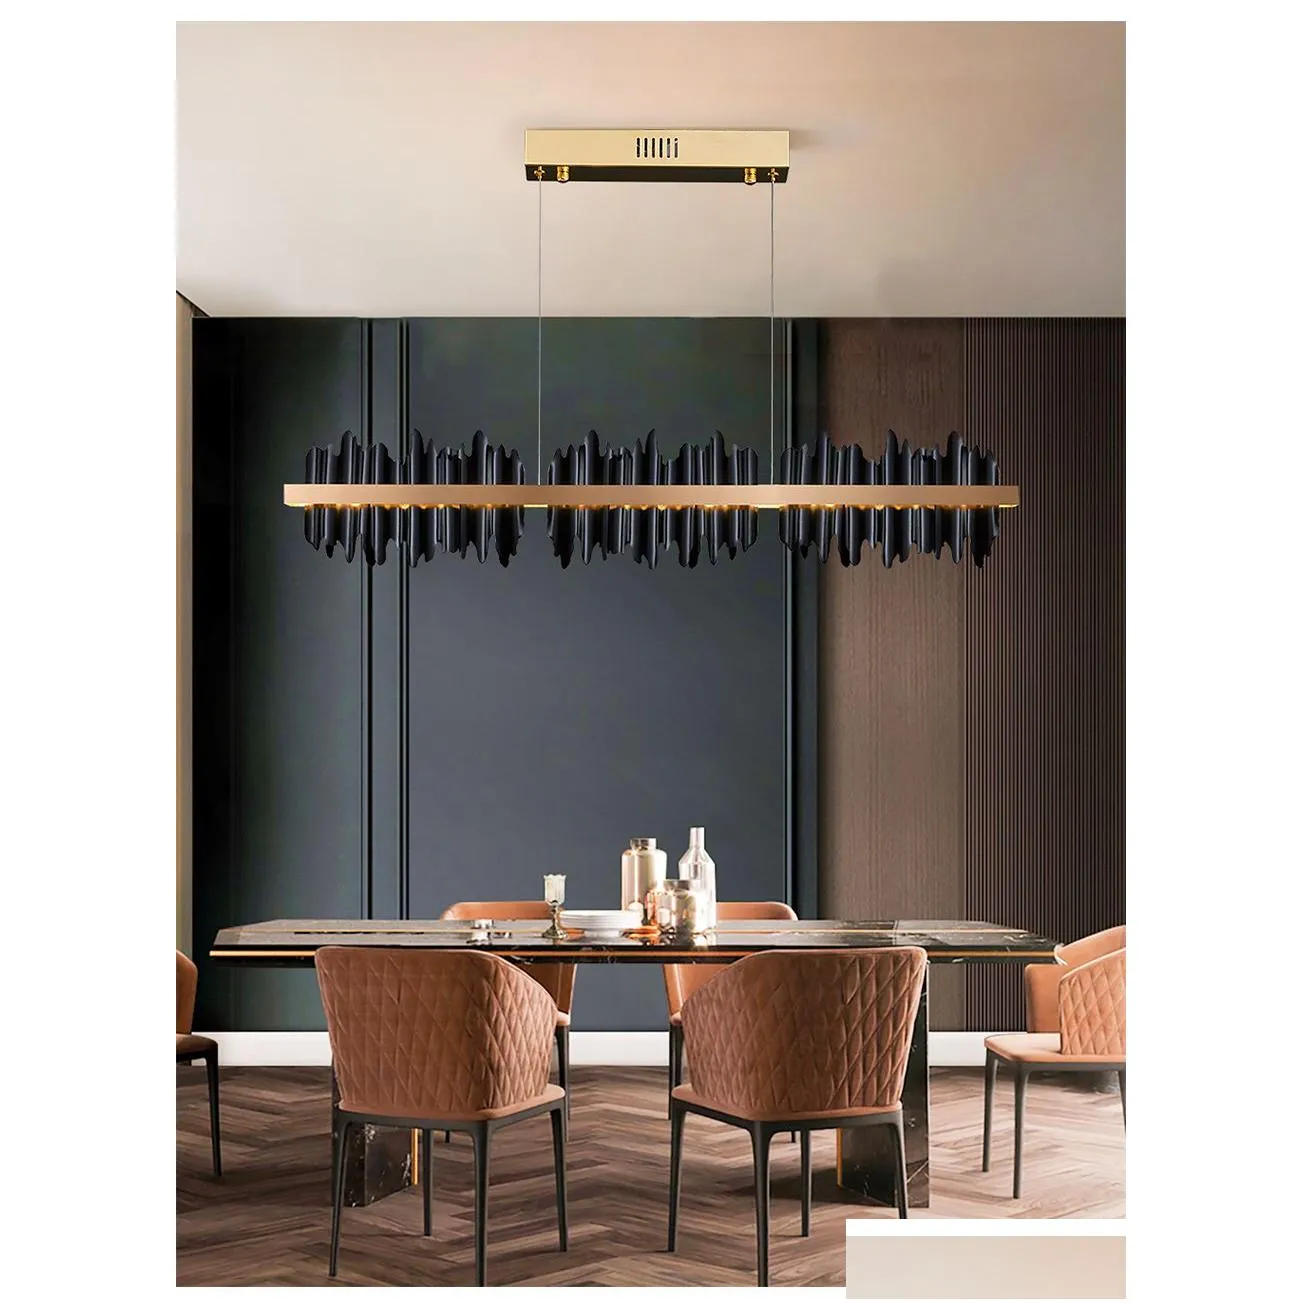 black dinning room chandelier rectangle led home decoration light fixture modern design copper kitchen island hanging lamp